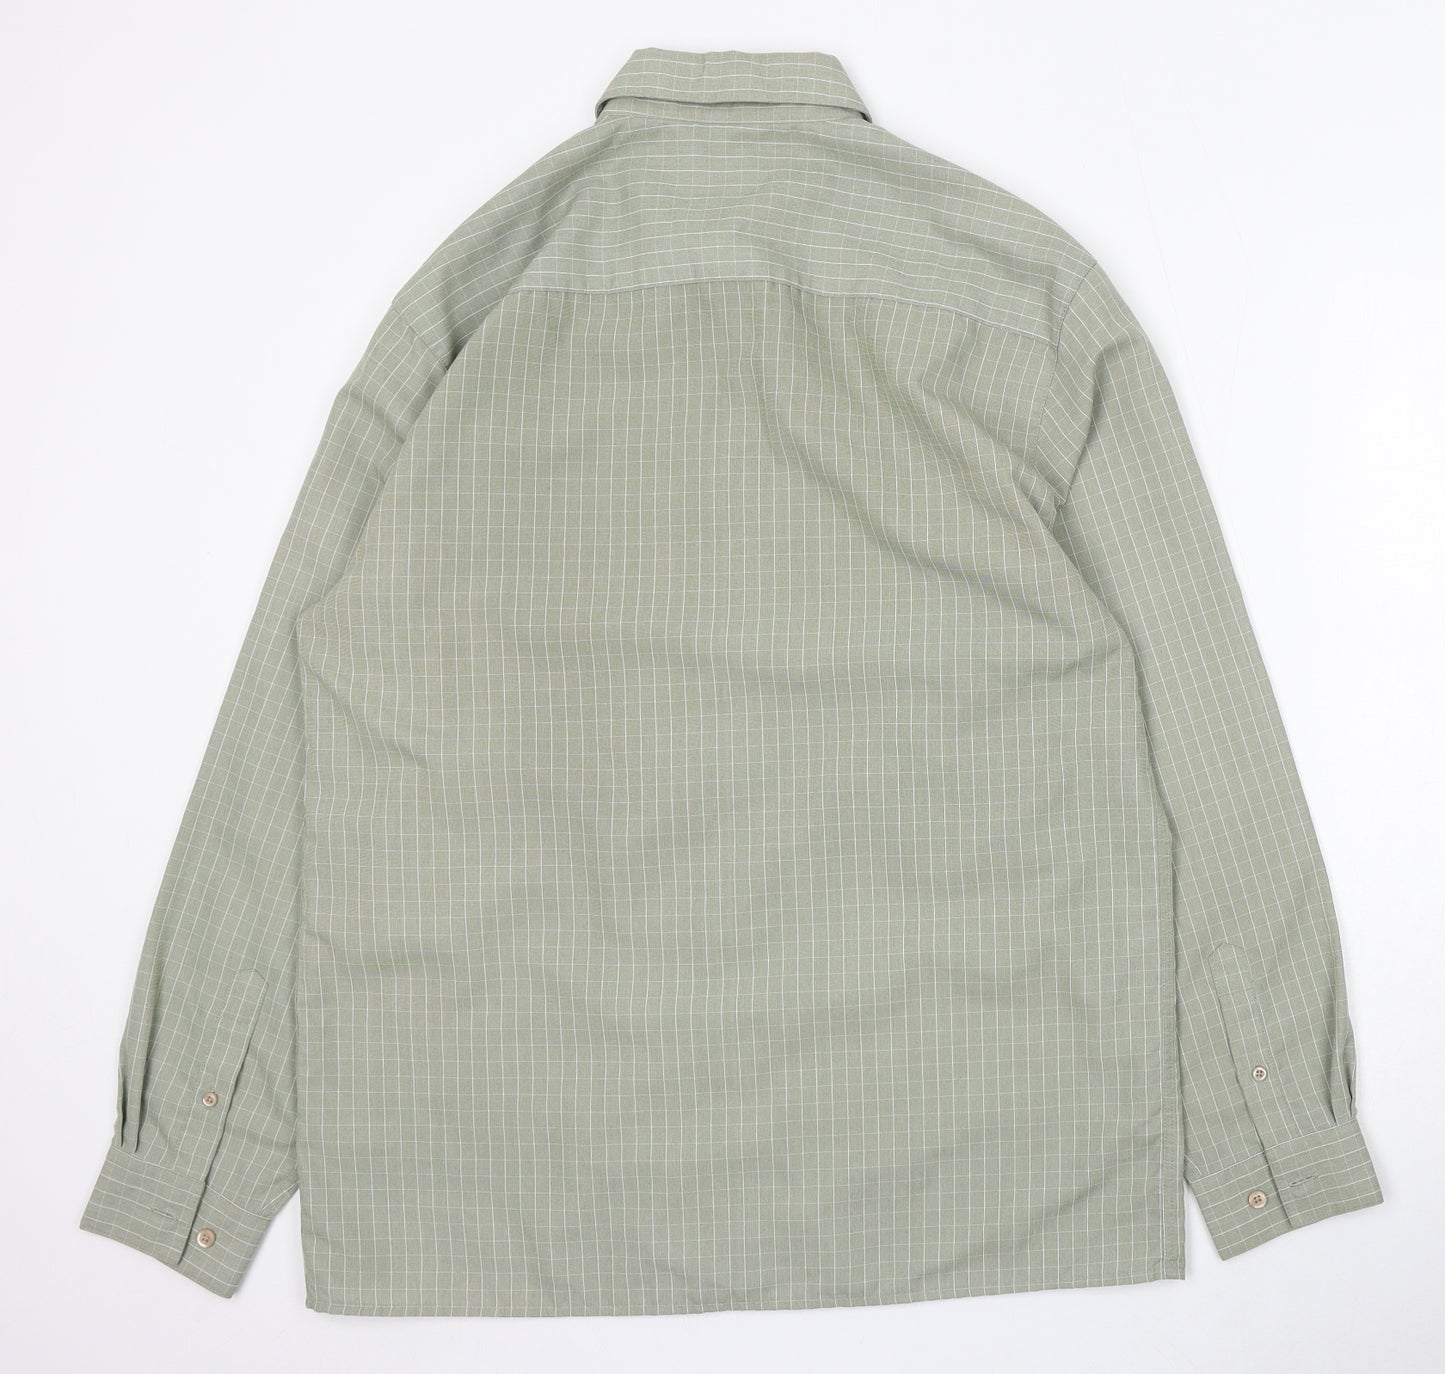 Thomas Nash Mens Green Check Cotton Button-Up Size M Collared Button